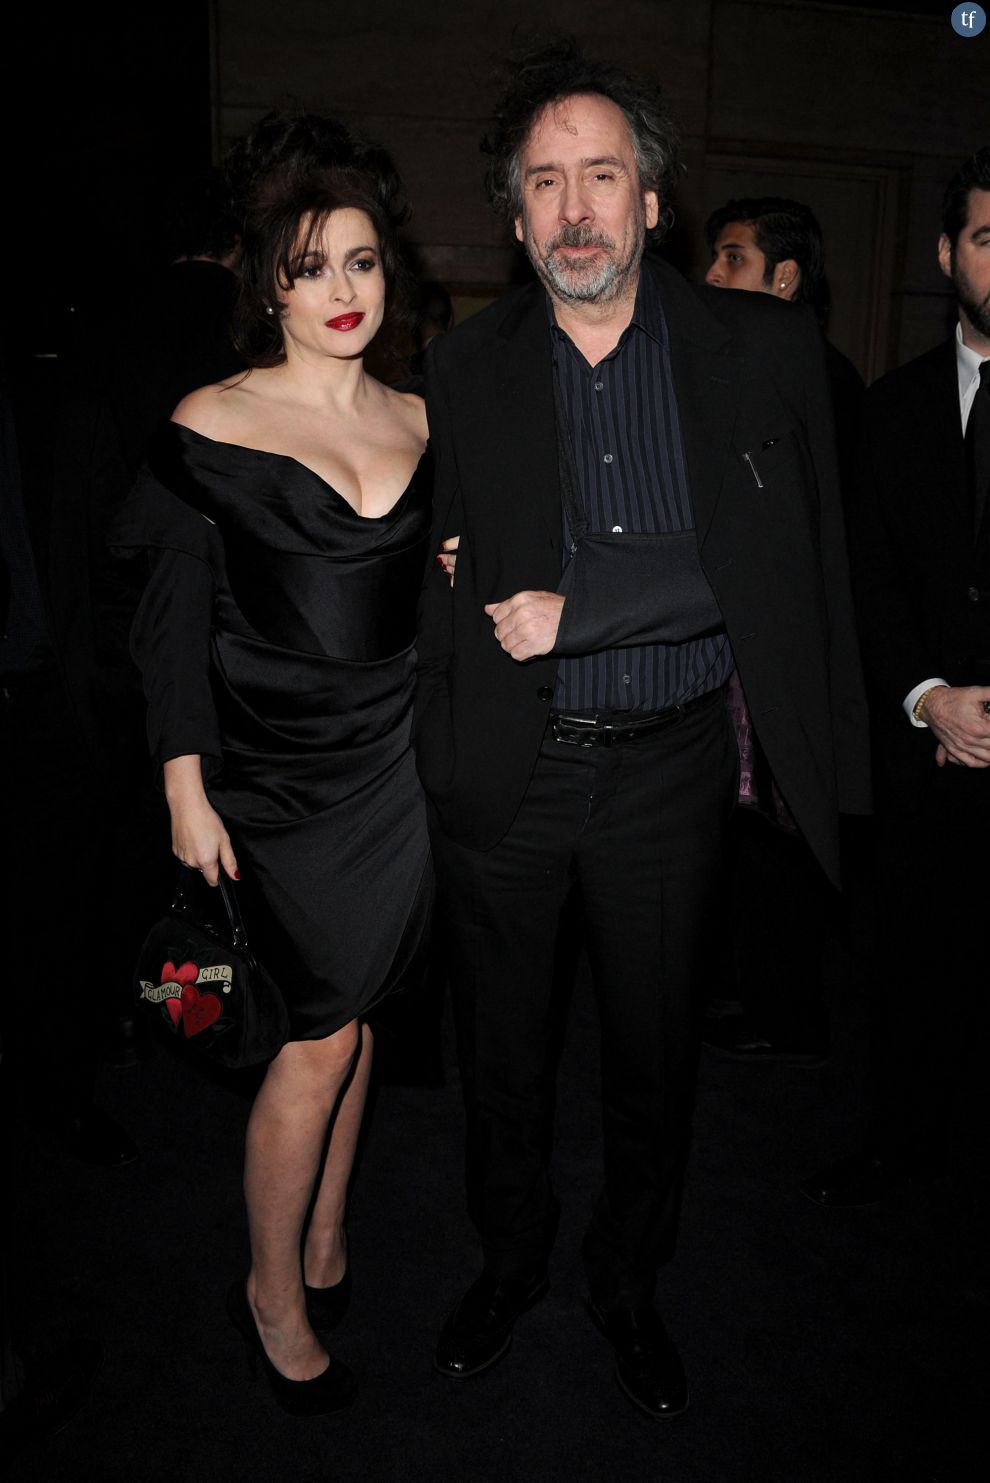  Helena Bonham Carter et Tim Burton, couple qui vivait séparément (ici en janvier 2013)  